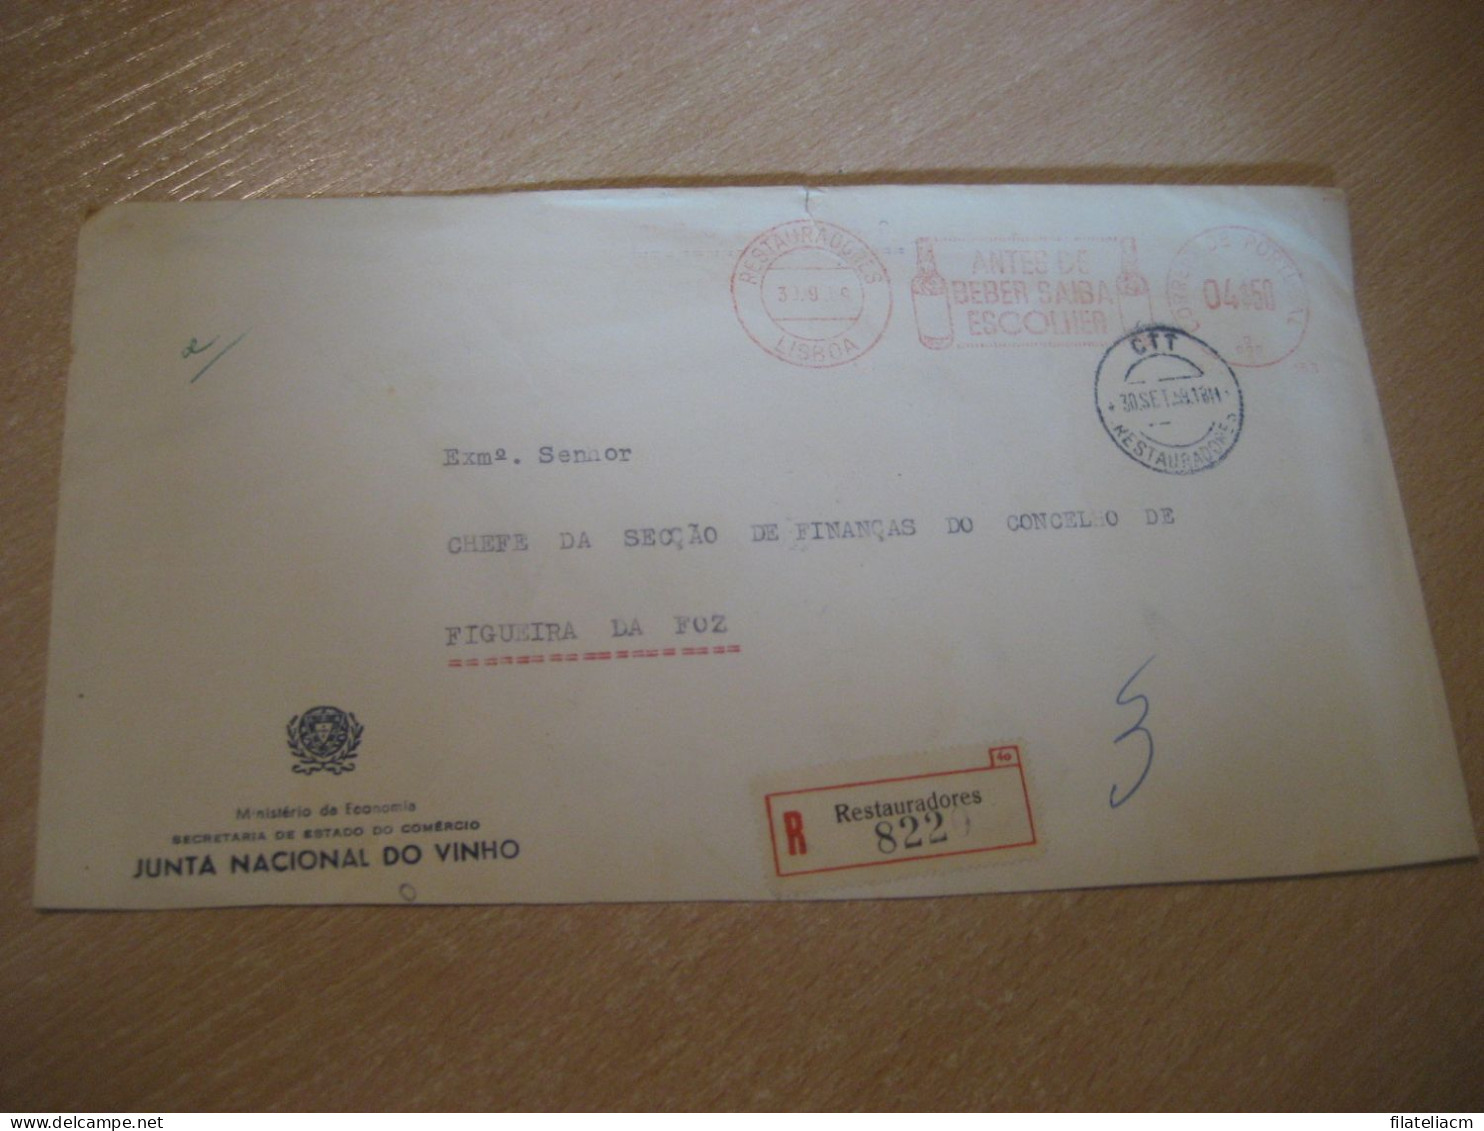 LISBOA 1959 To Figueira Da Foz Beber Junta Vinho Wine Enology Drink Registered Meter Mail Slight Faults Cover PORTUGAL - Lettres & Documents